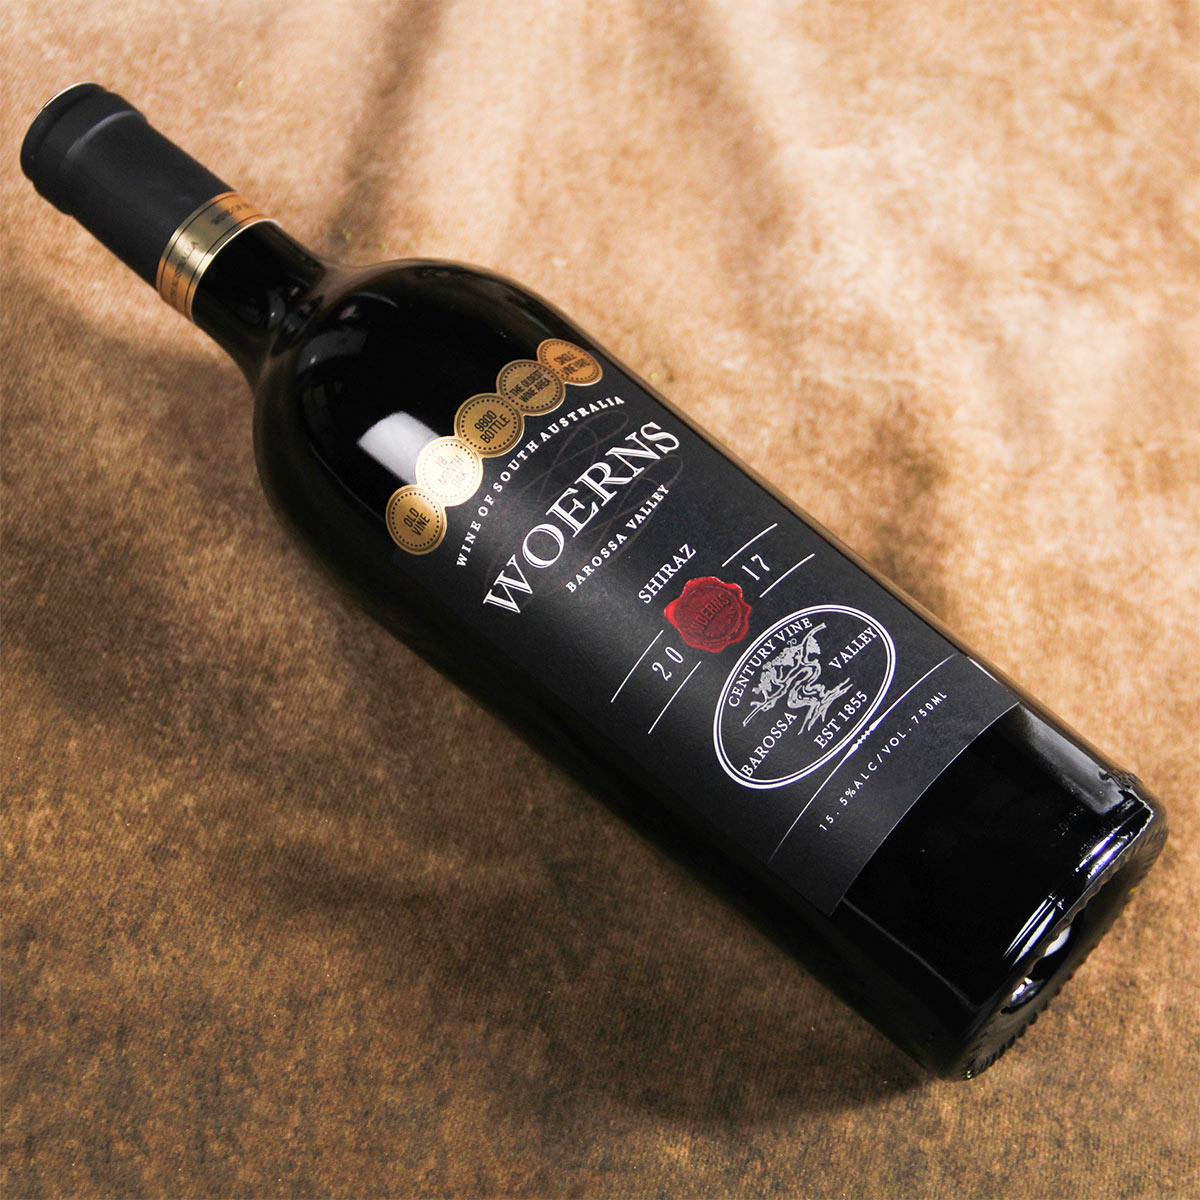 澳大利亚巴罗萨谷沃恩斯百年老藤西拉红葡萄酒